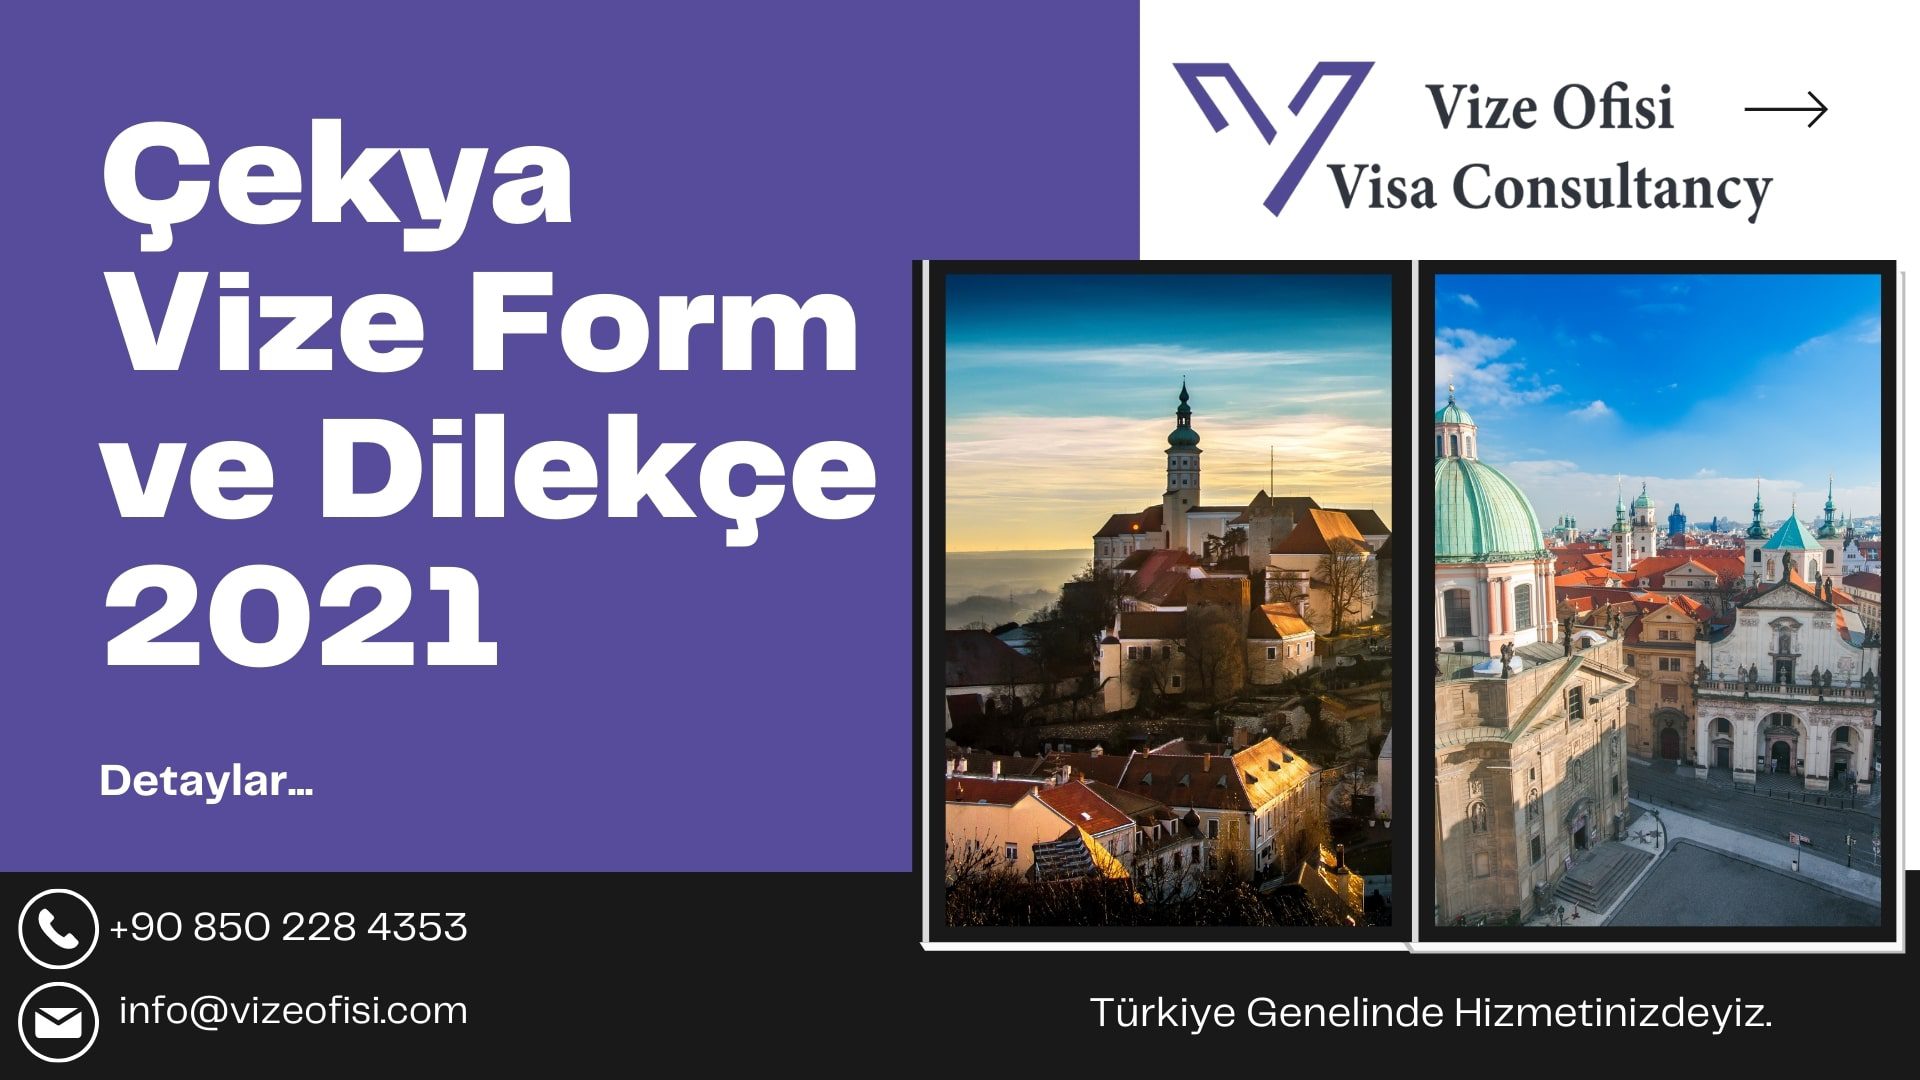 Çekya Vize Form ve Dilekçe 2021